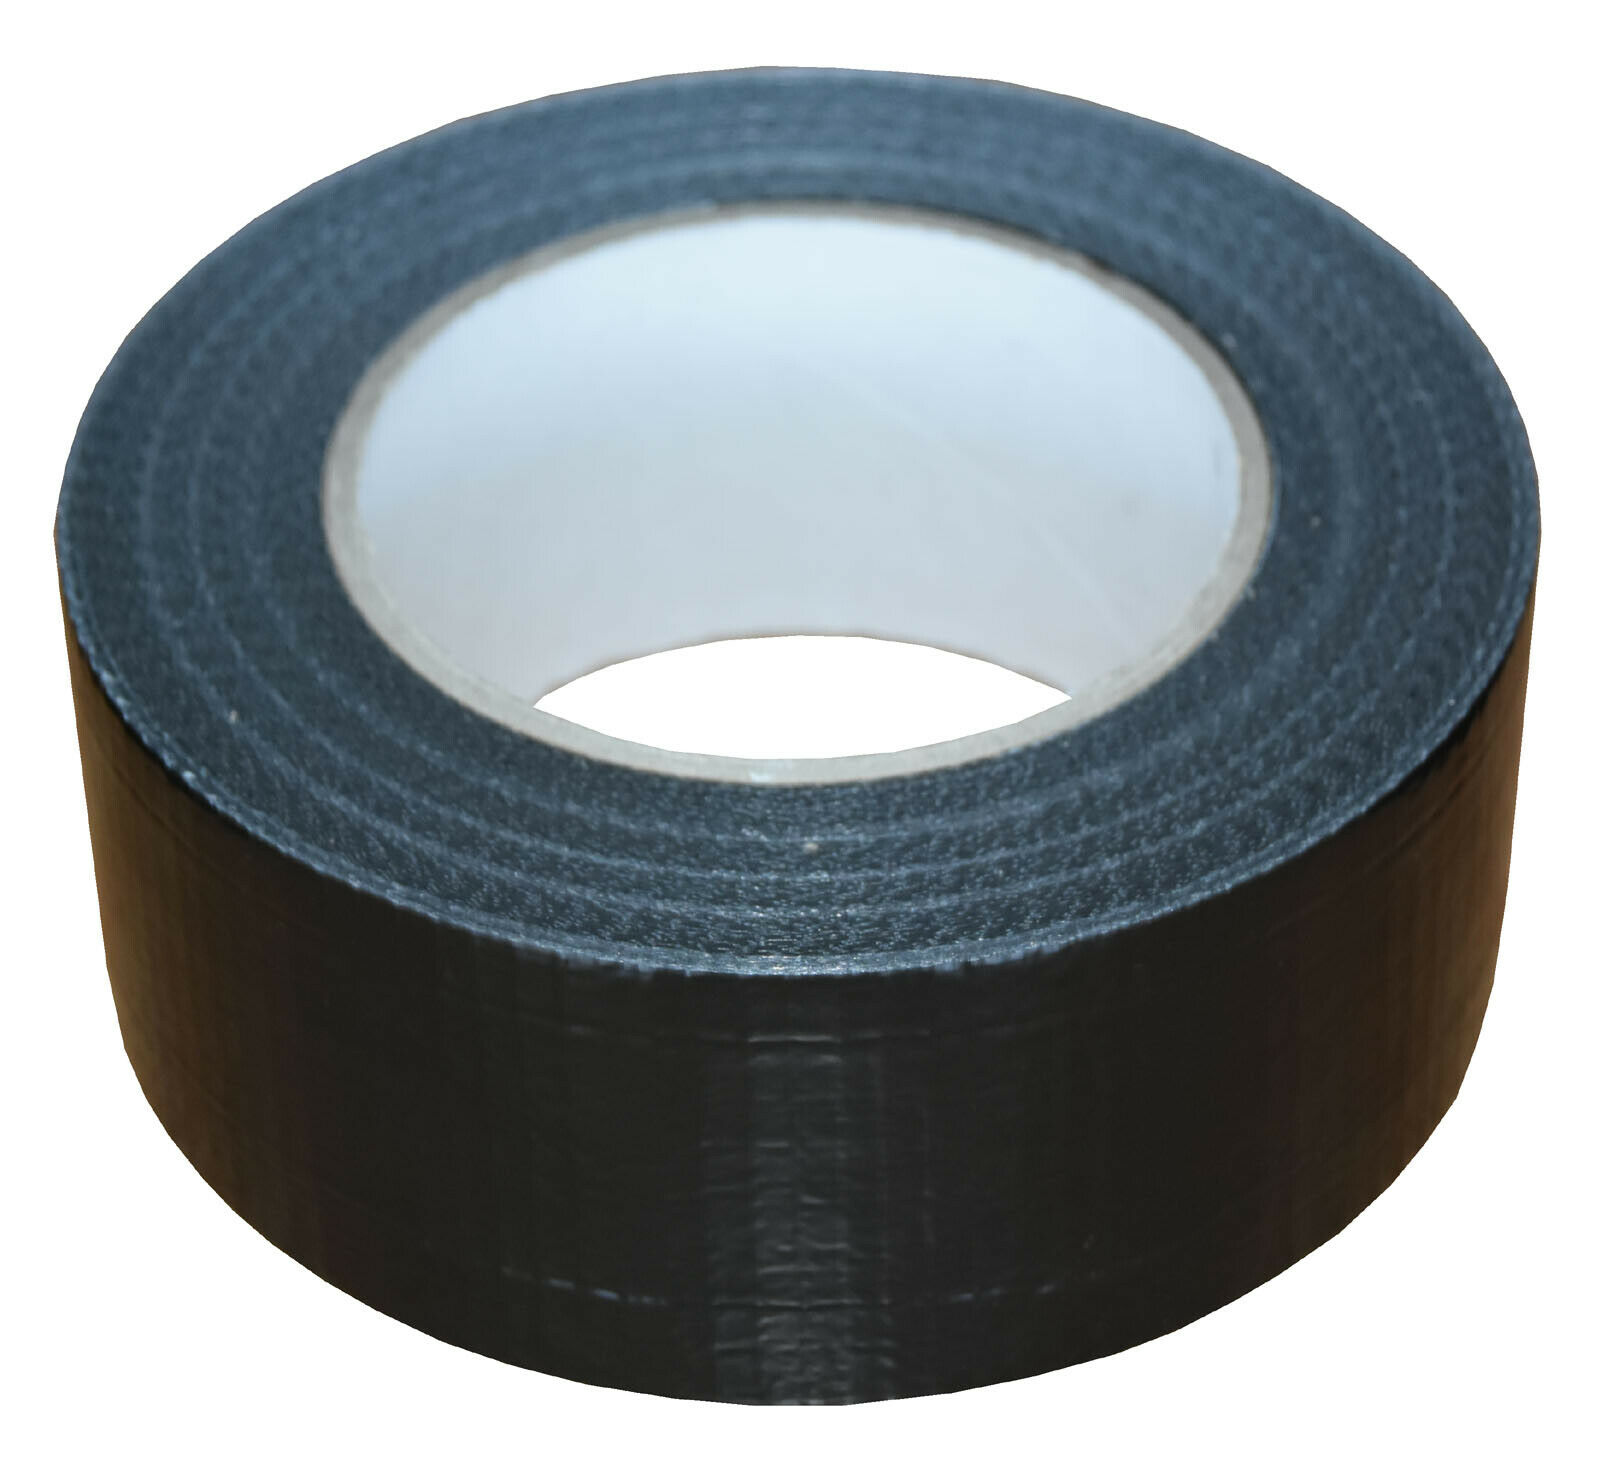 50mm x 50m Black Gaffer Tape Waterproof Duct Tape Qty 6 Rolls